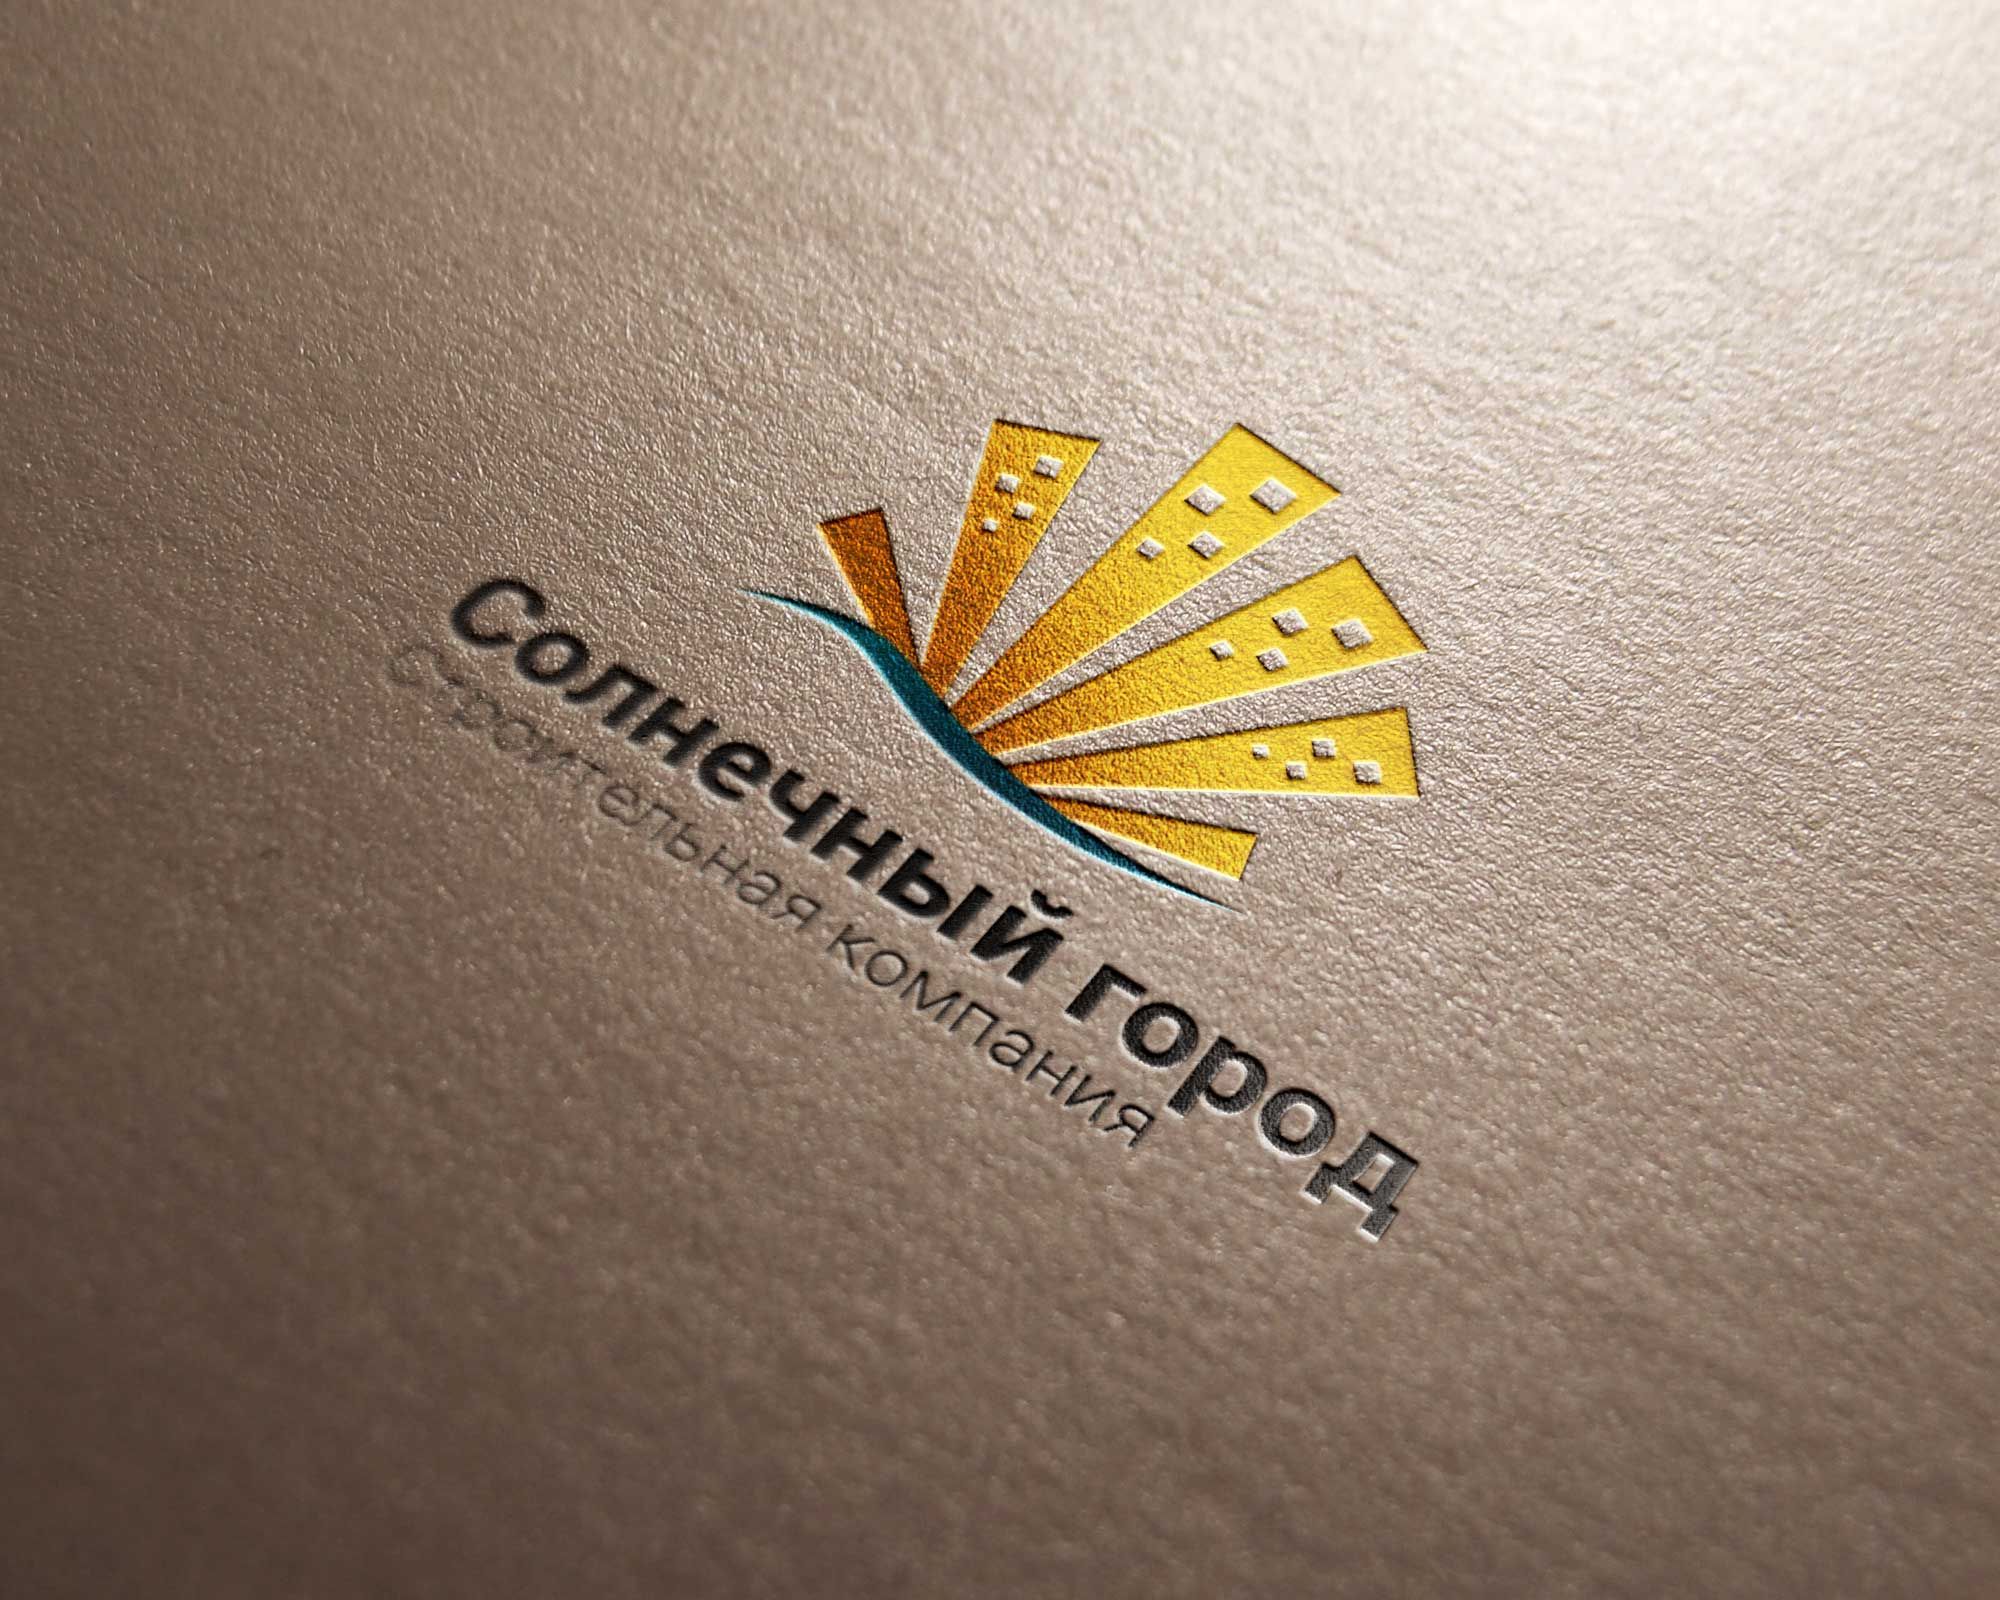 Логотип для солнечного города - дизайнер goljakovai